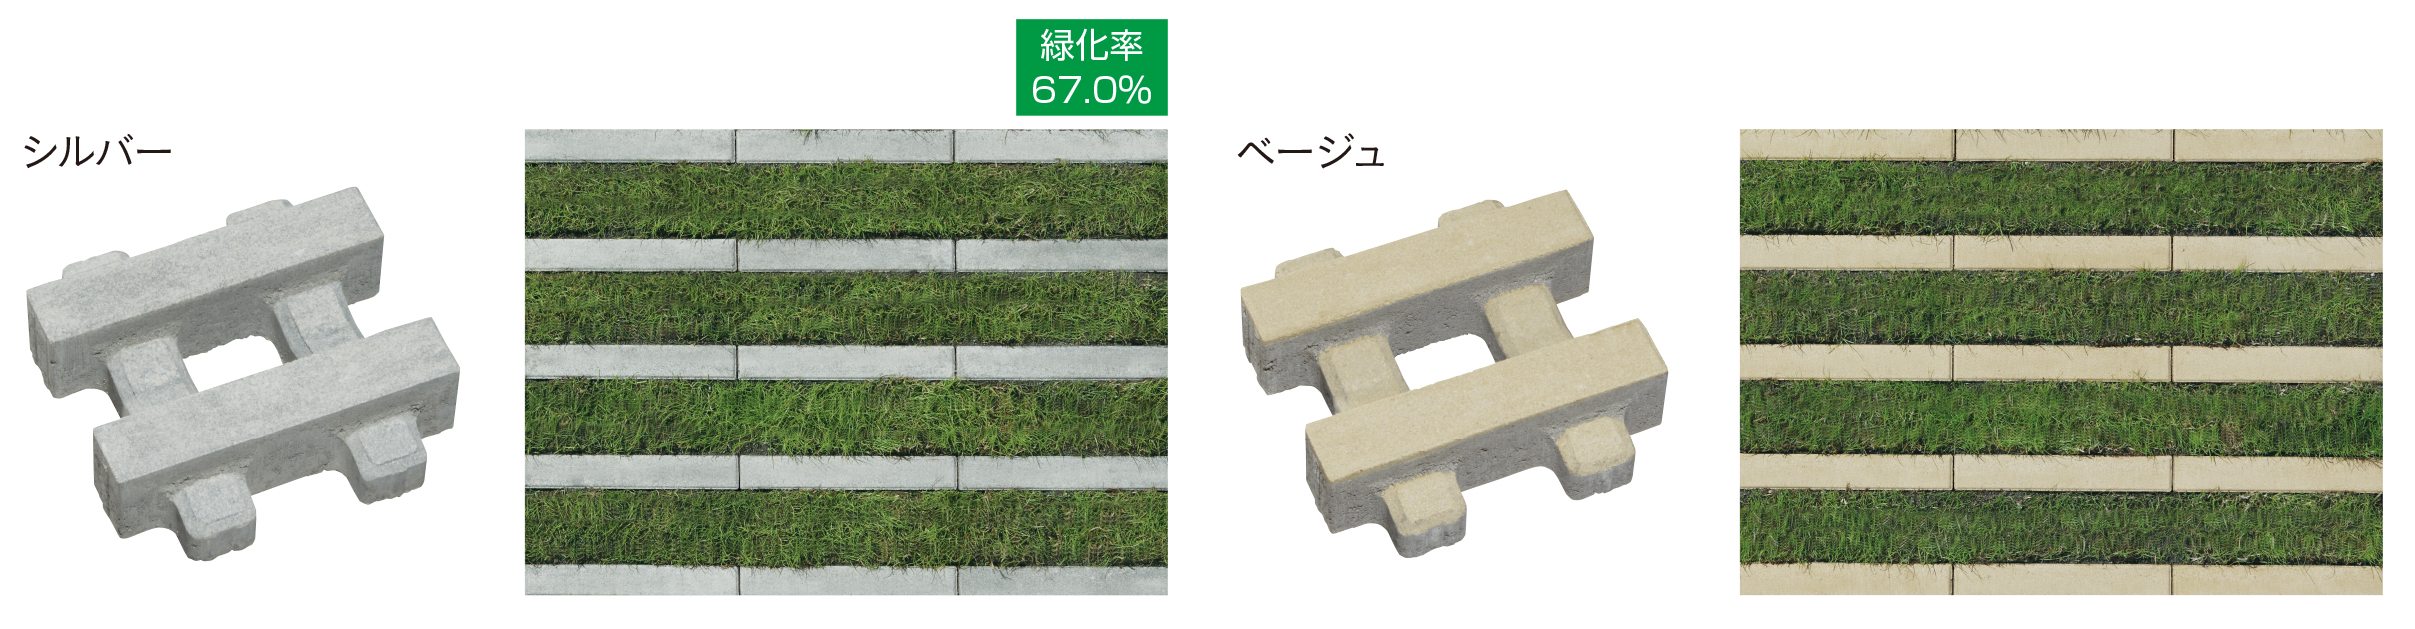 コンクリート製植生舗装材【リビオ[ai]緑化】